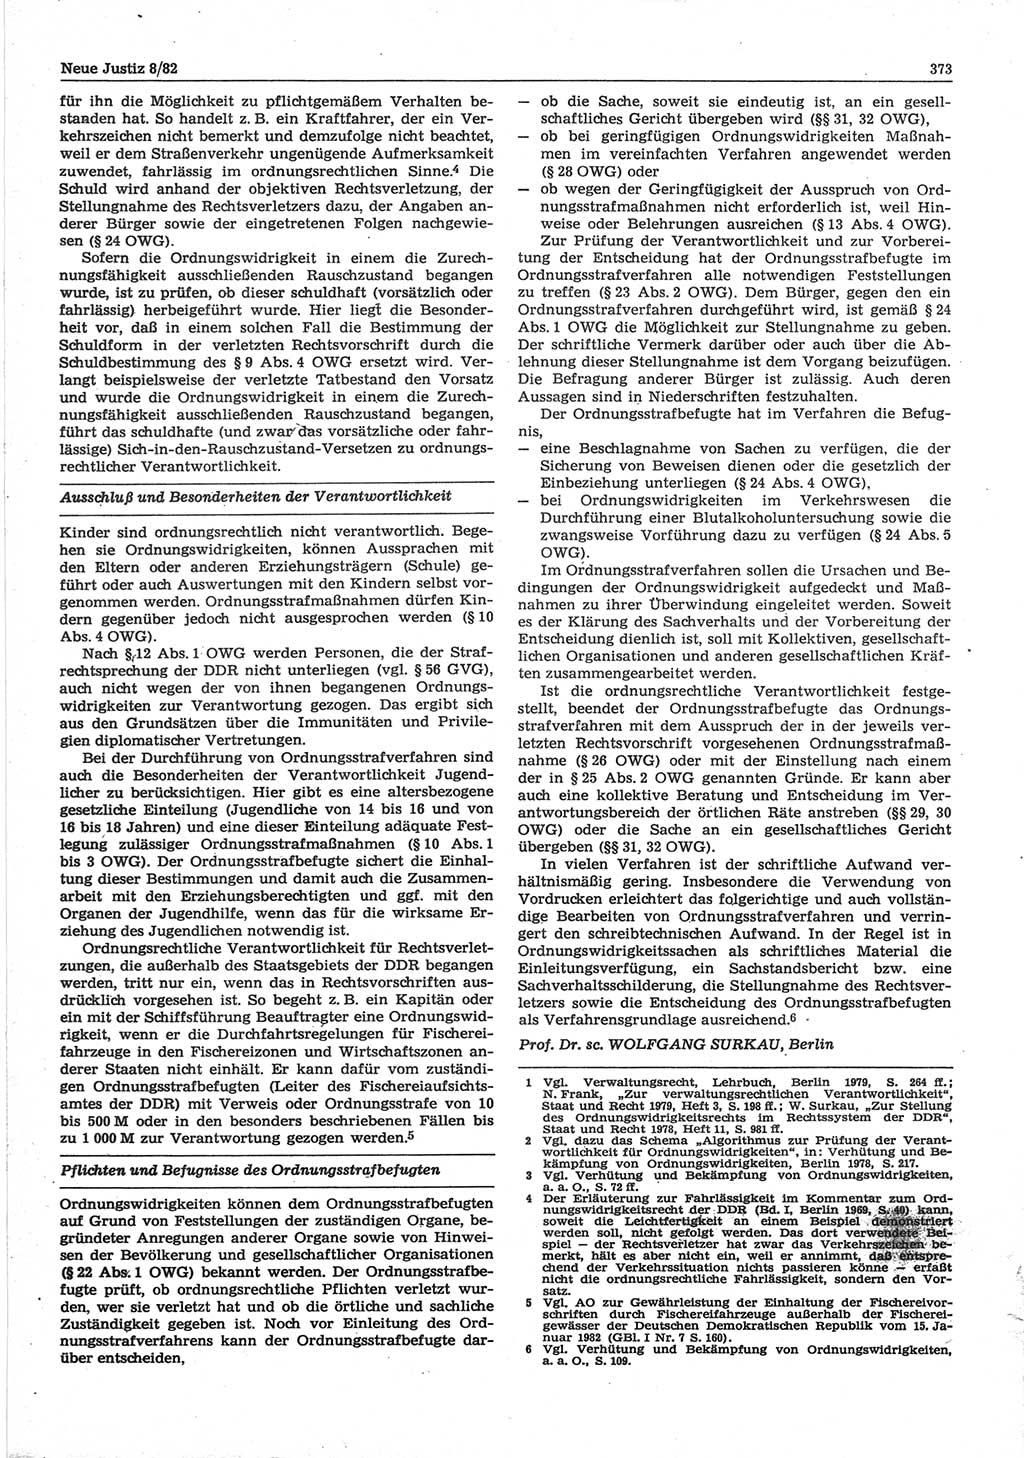 Neue Justiz (NJ), Zeitschrift für sozialistisches Recht und Gesetzlichkeit [Deutsche Demokratische Republik (DDR)], 36. Jahrgang 1982, Seite 373 (NJ DDR 1982, S. 373)